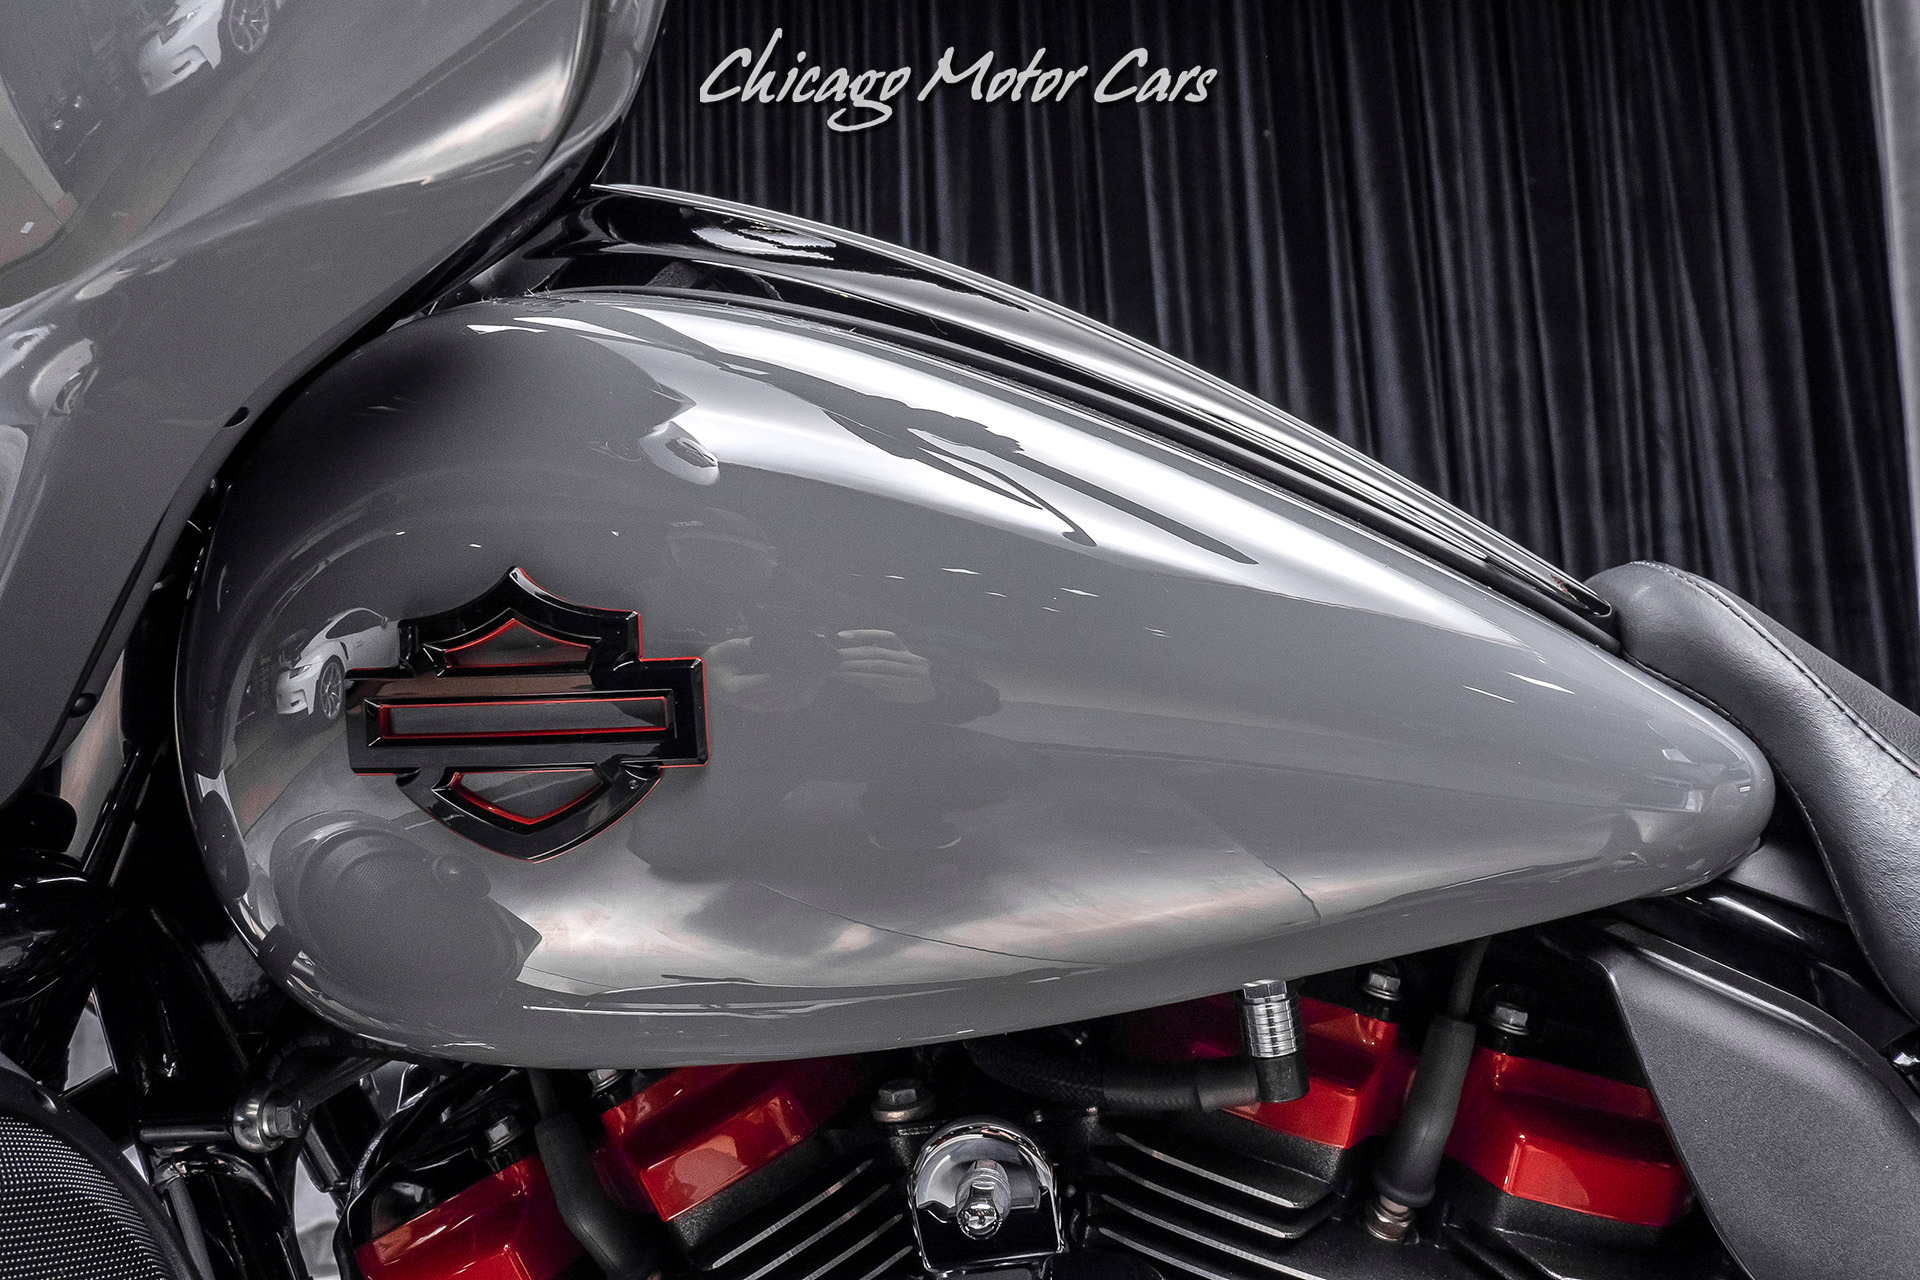 Used-2018-Harley-Davidson-FLHXSE-CVO-Street-Glide-10k-in-Upgrades